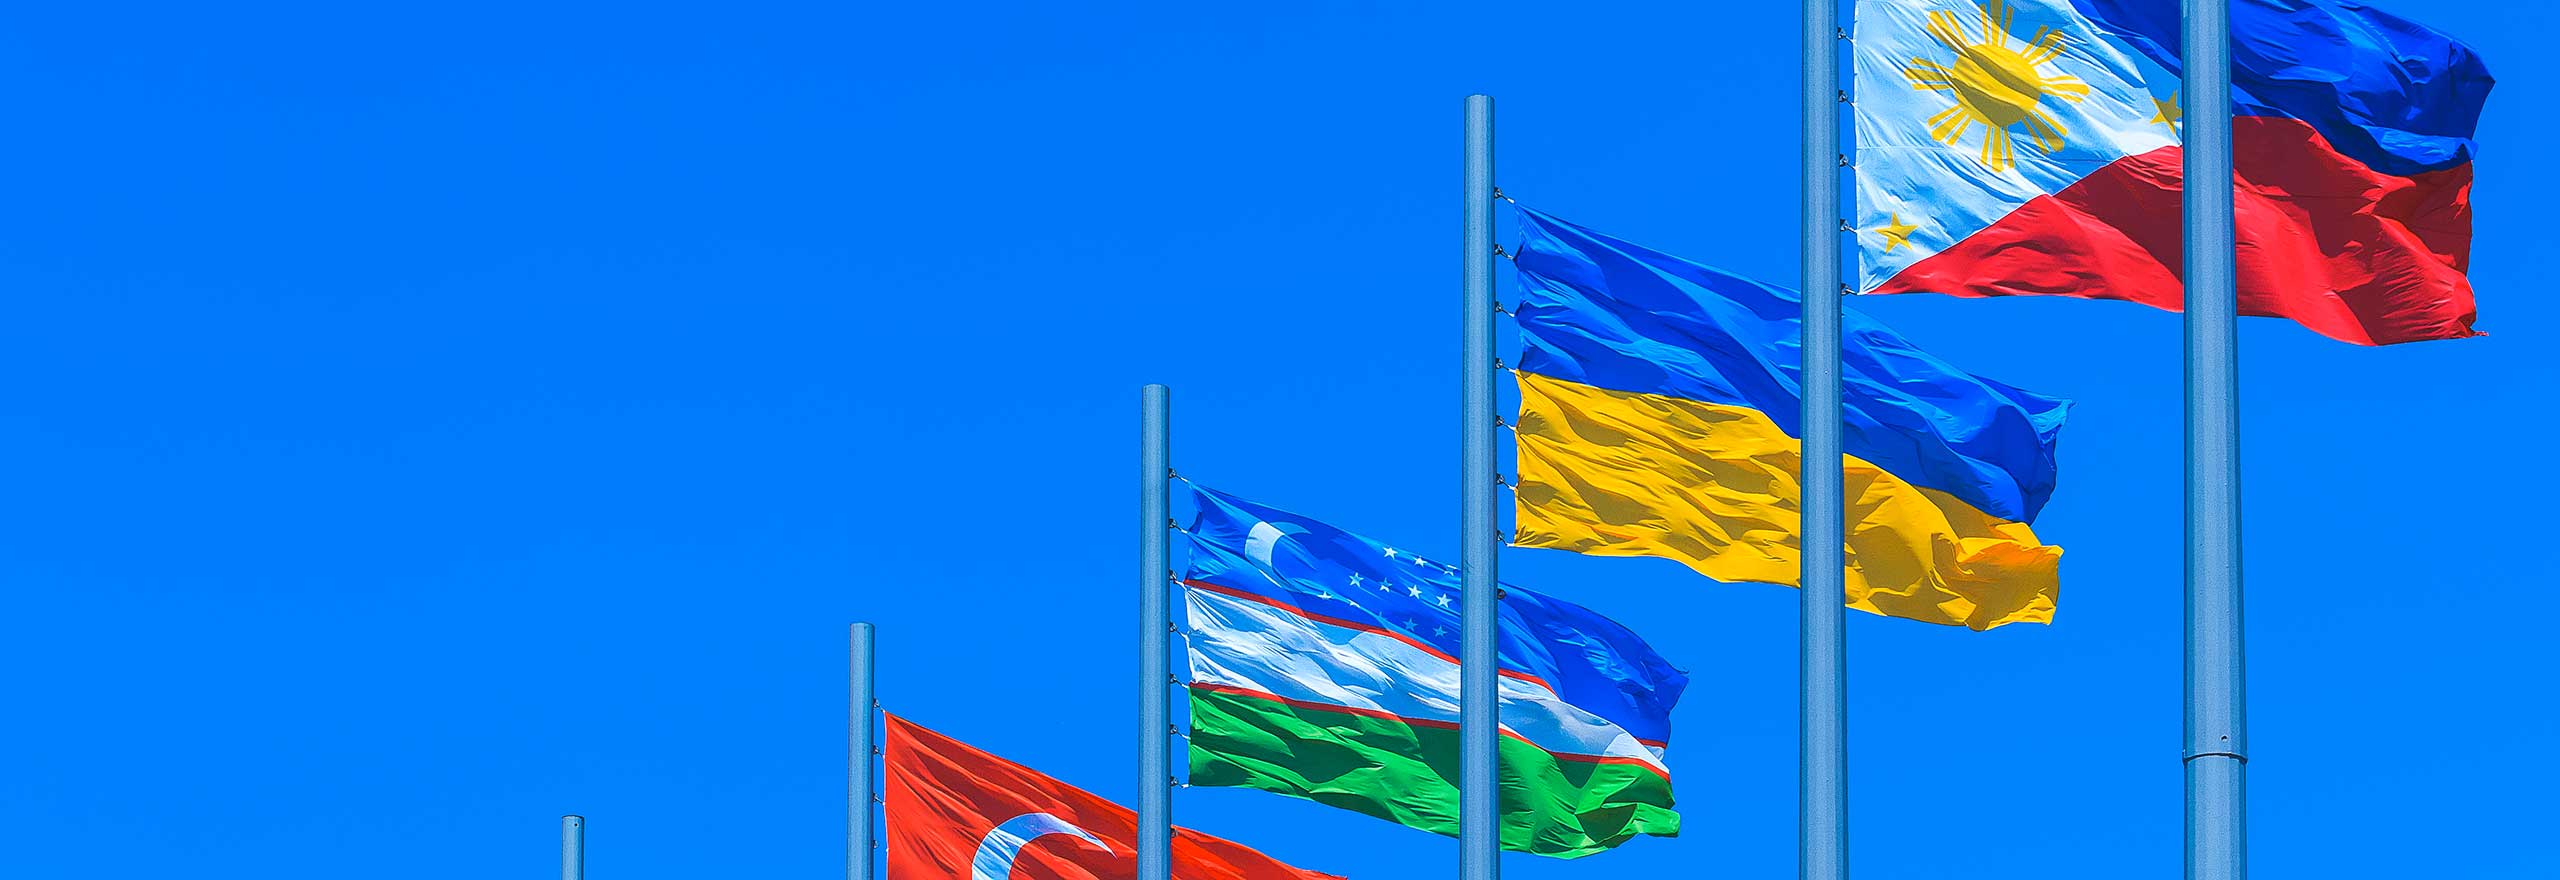 Bandeiras de vários países tremulando no céu azul